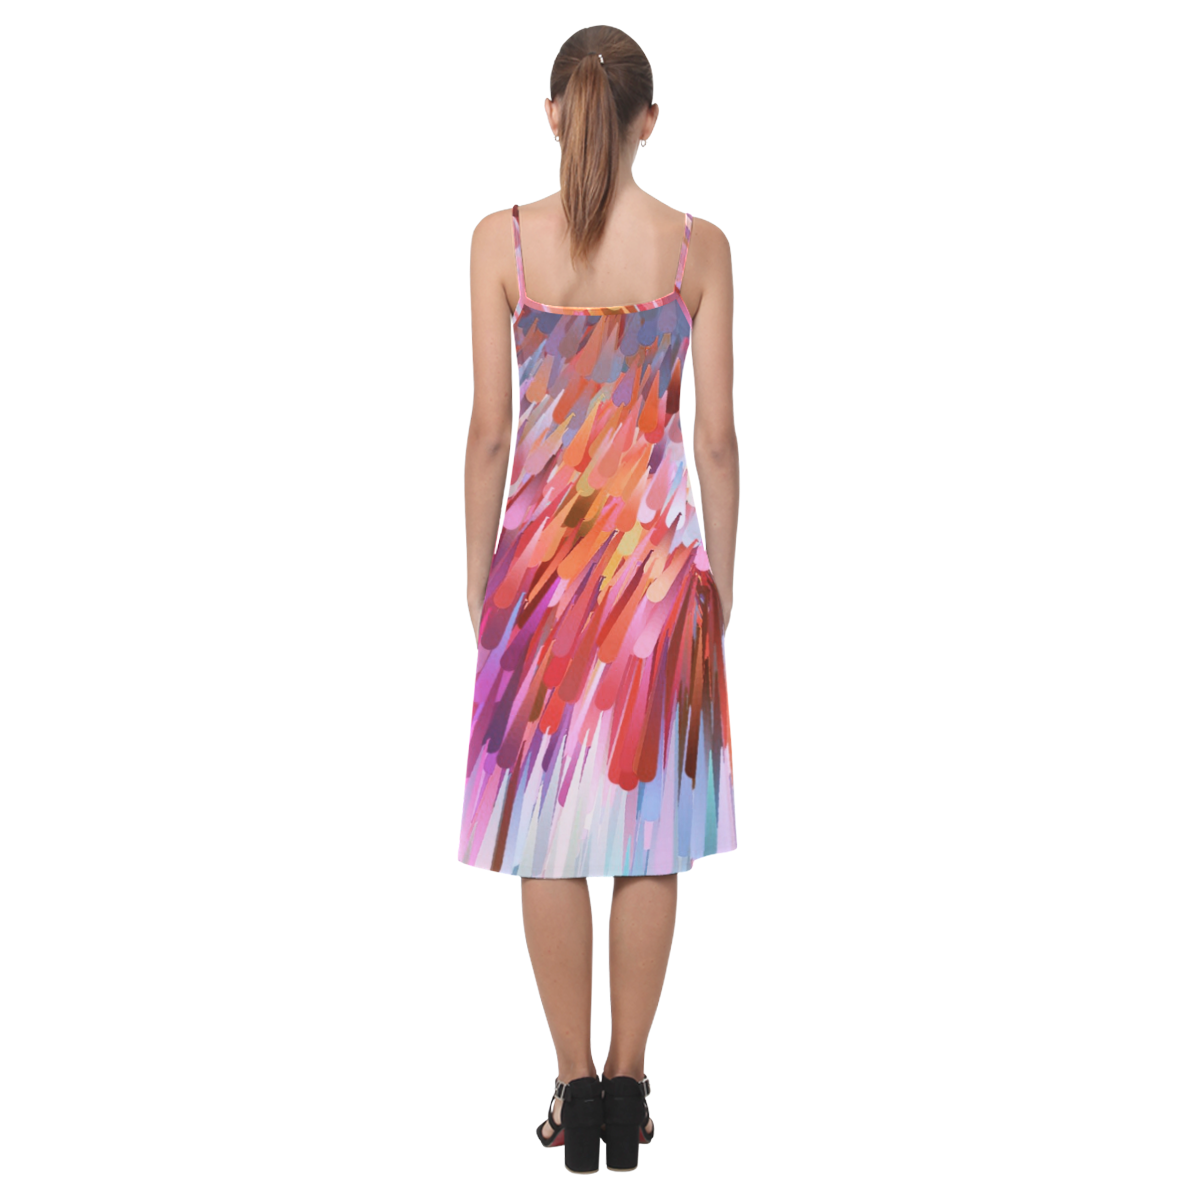 Lady Pattern by Artdream Alcestis Slip Dress (Model D05)